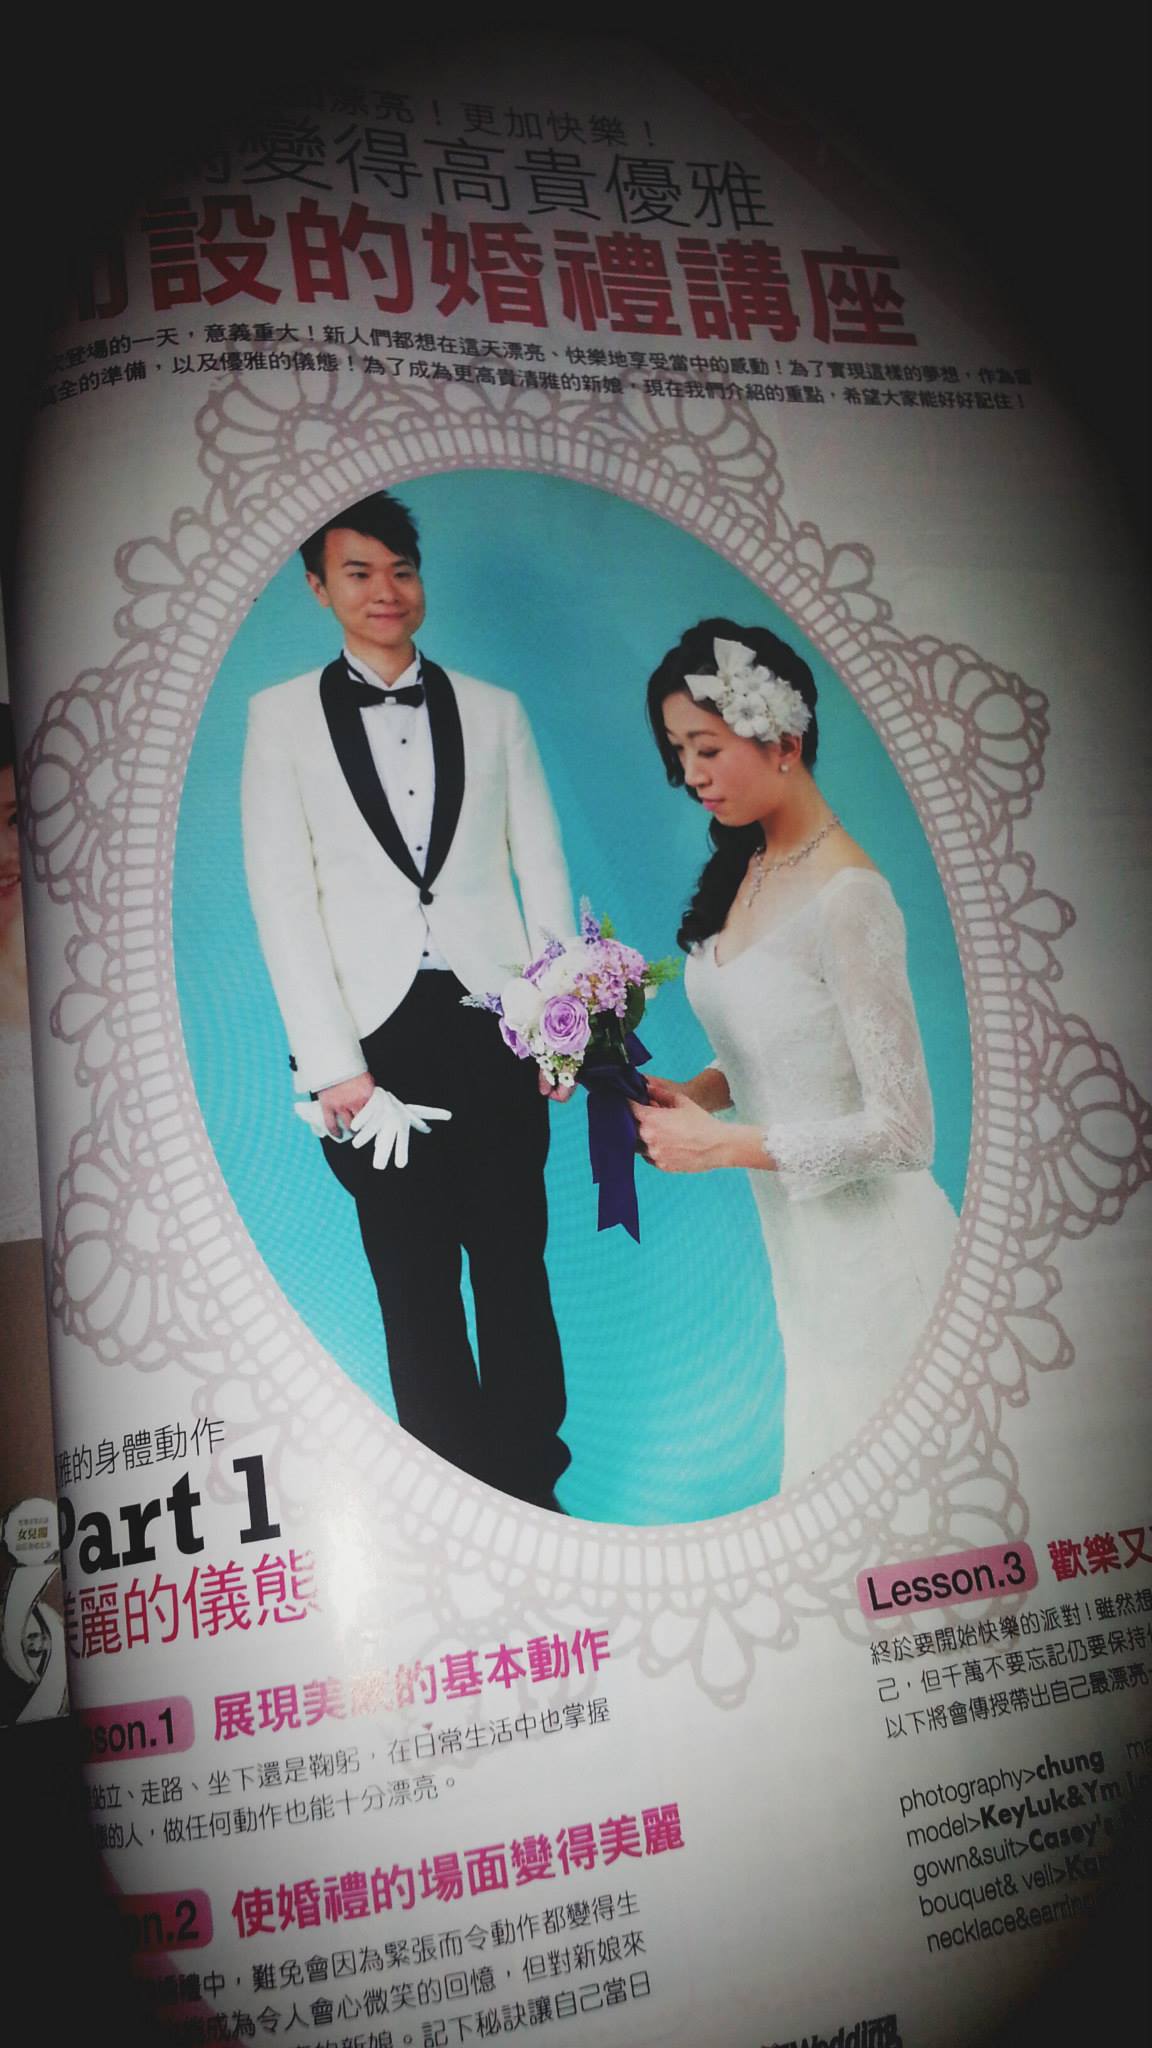  鎖匙 Key Luk之演藝人紀錄: 婚禮雜誌 - 平面模特